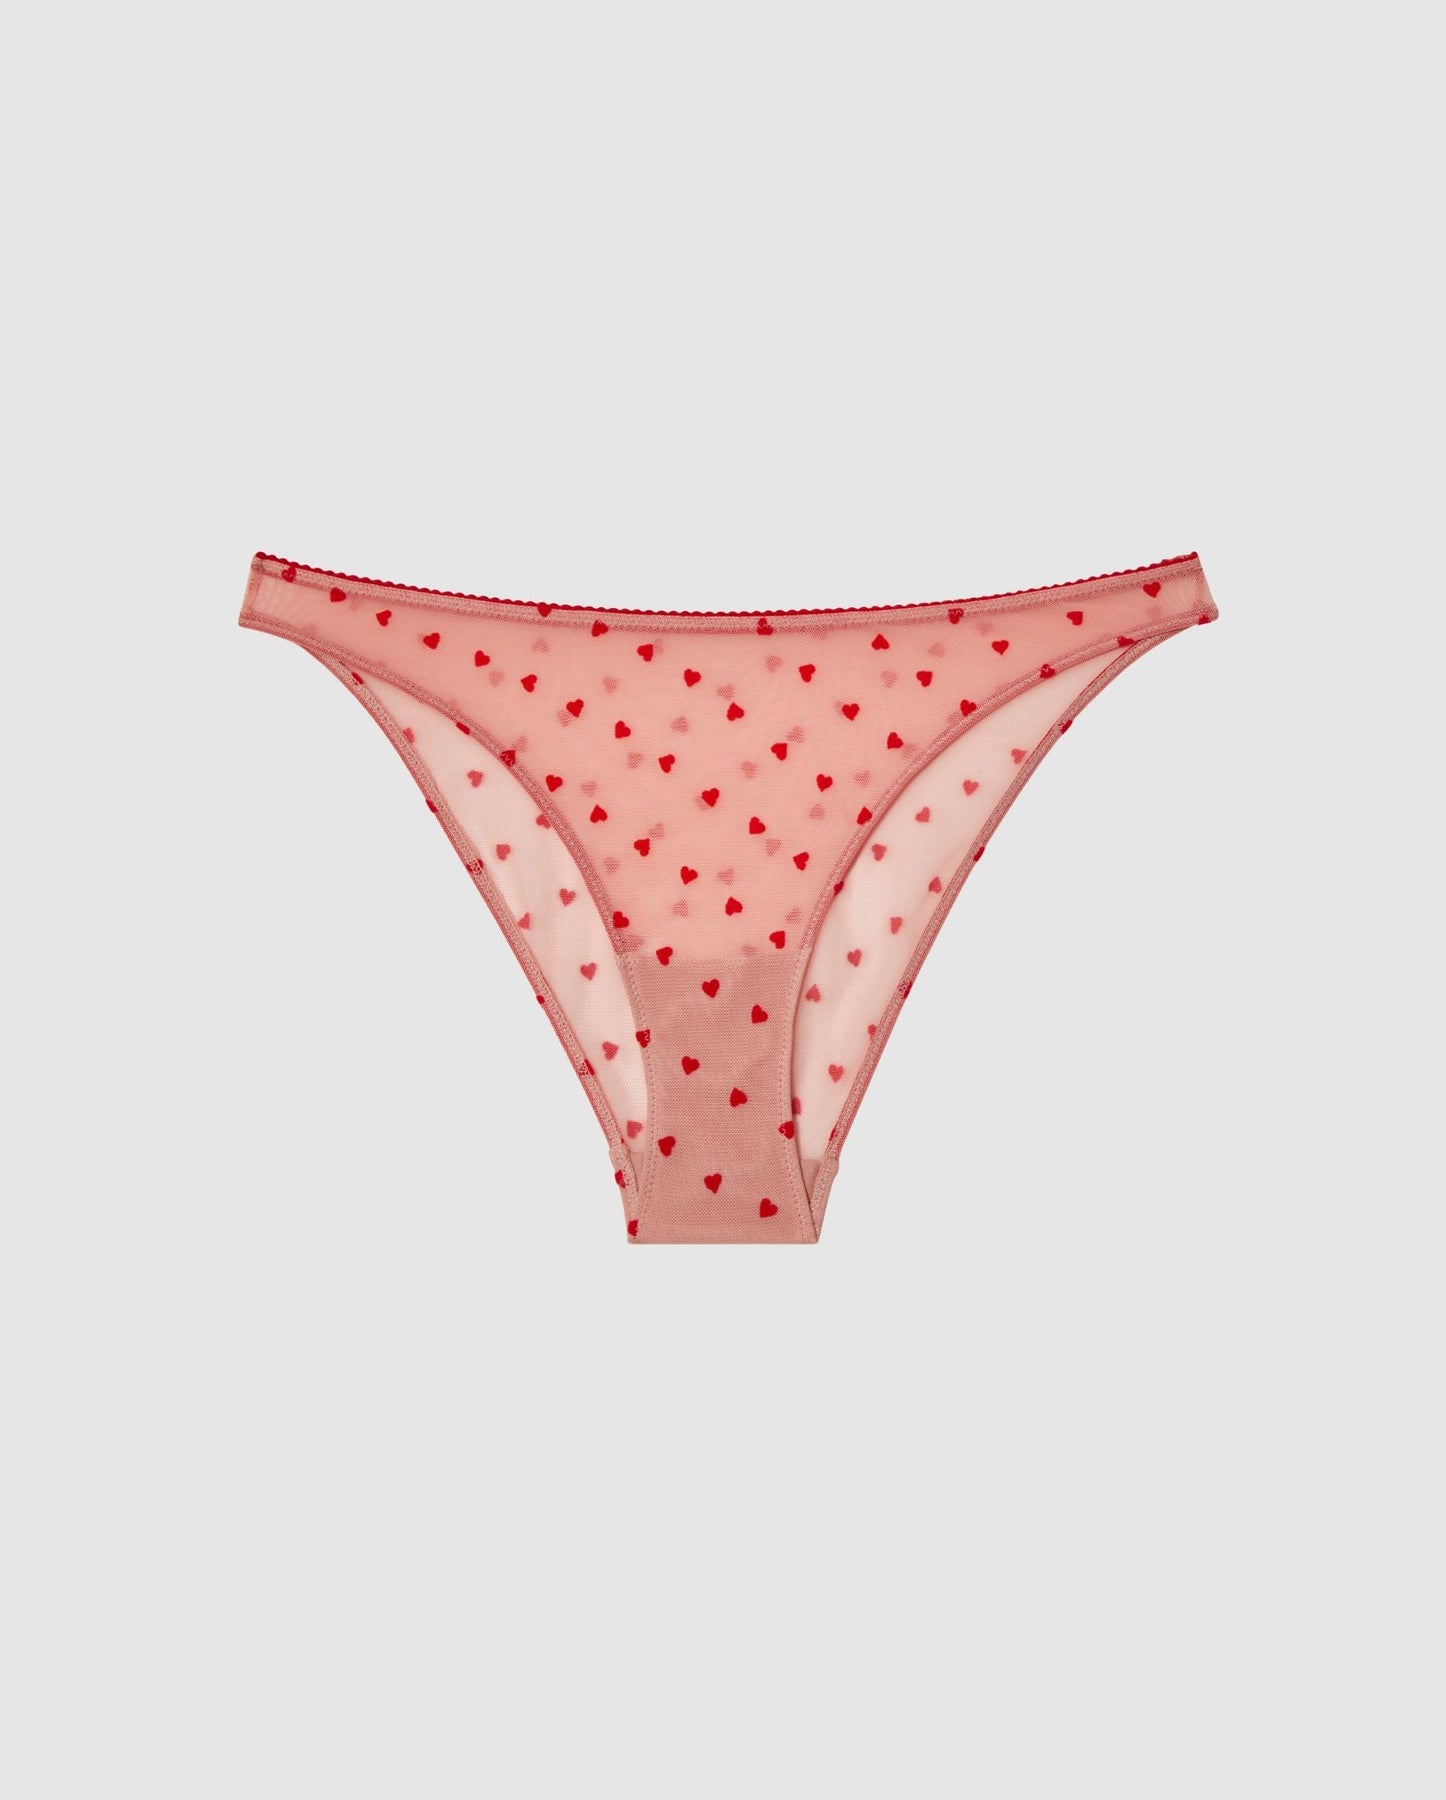 Mesh Bikini Briefs Hot Pink • Panties • Understatement Underwear